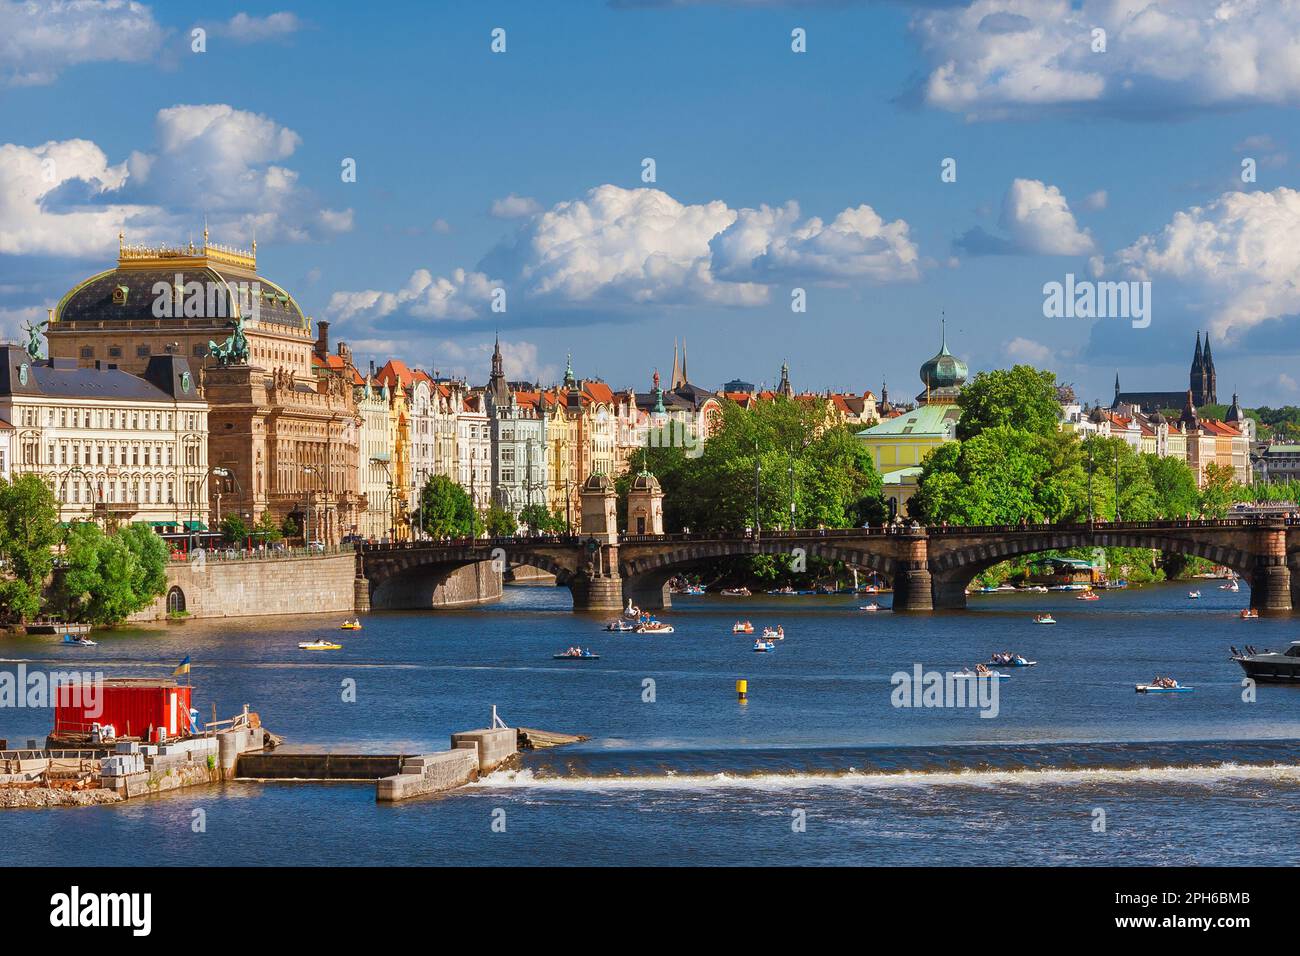 Prague magnifique sur la Vltava avec le Théâtre national, le pont de la légion, l'île Slovansky et des bateaux à aubes Banque D'Images